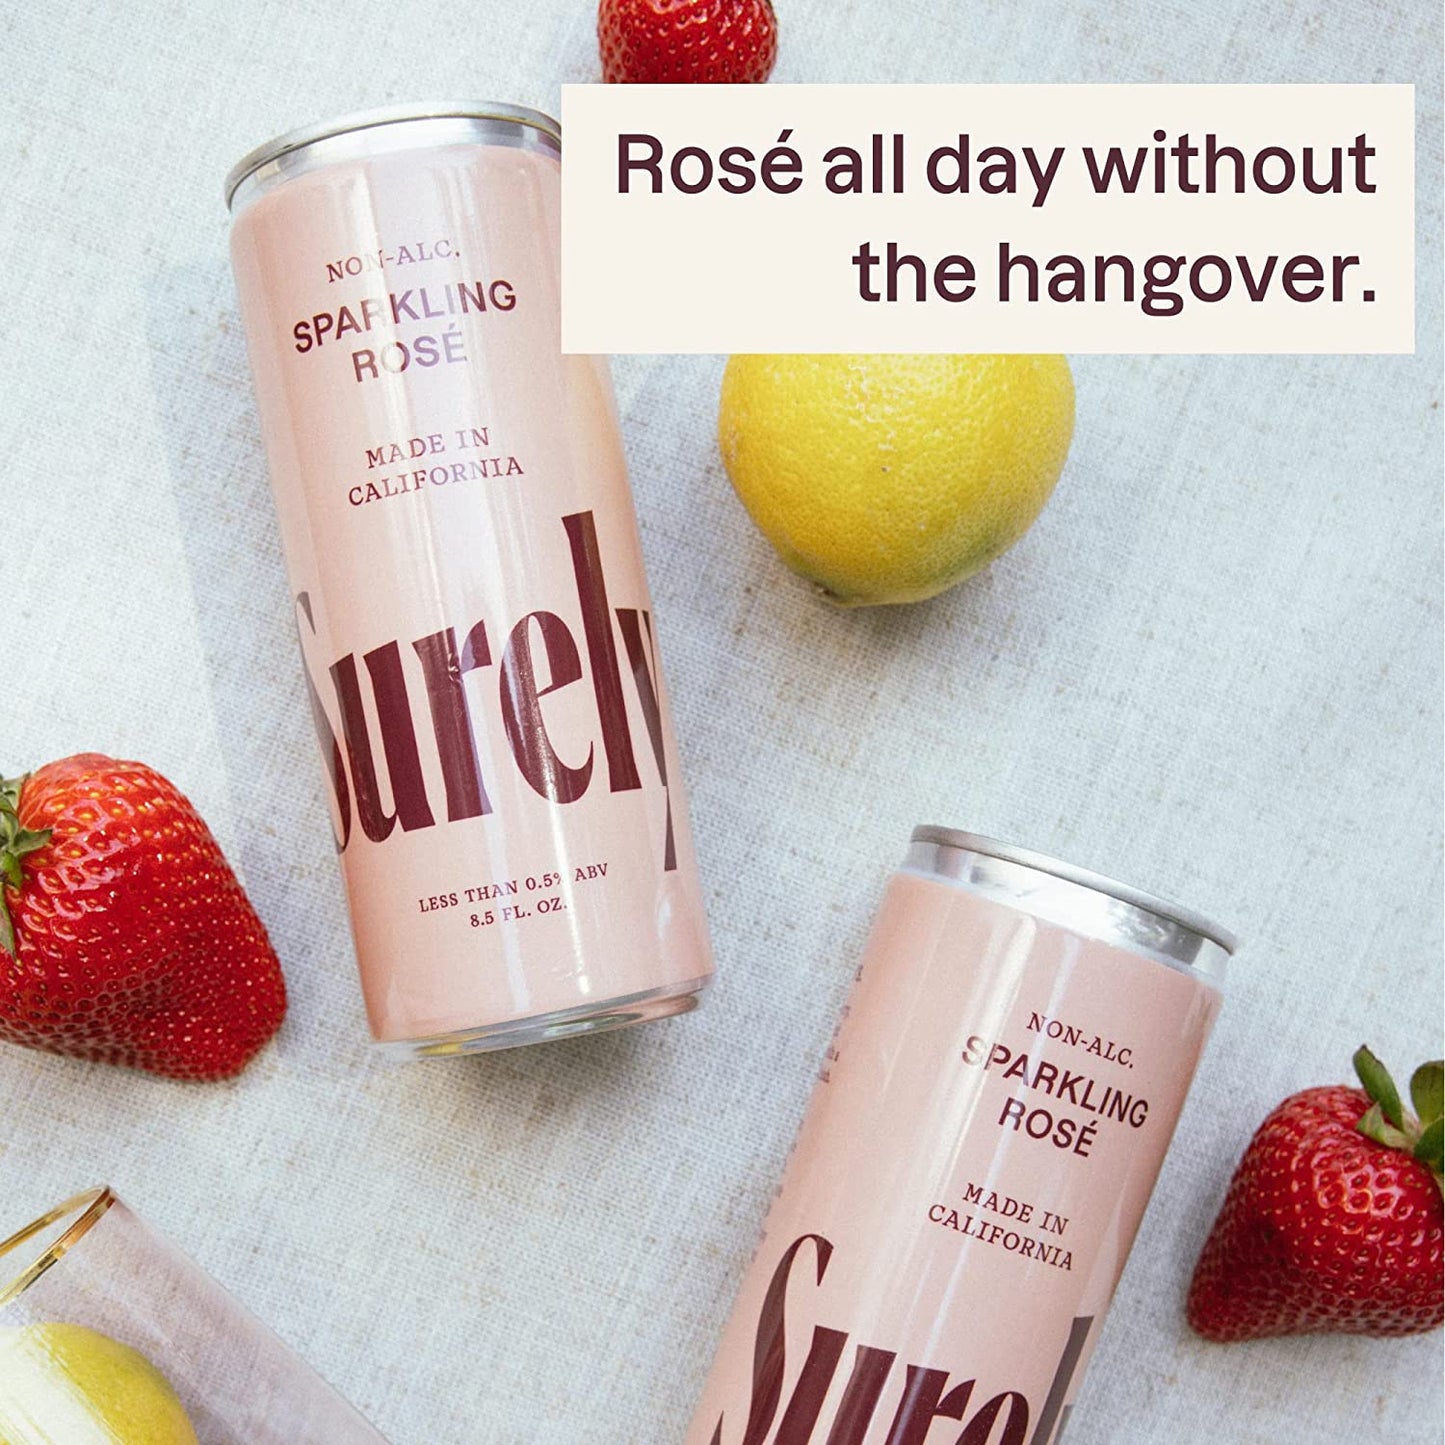 Surely Rosé Cans